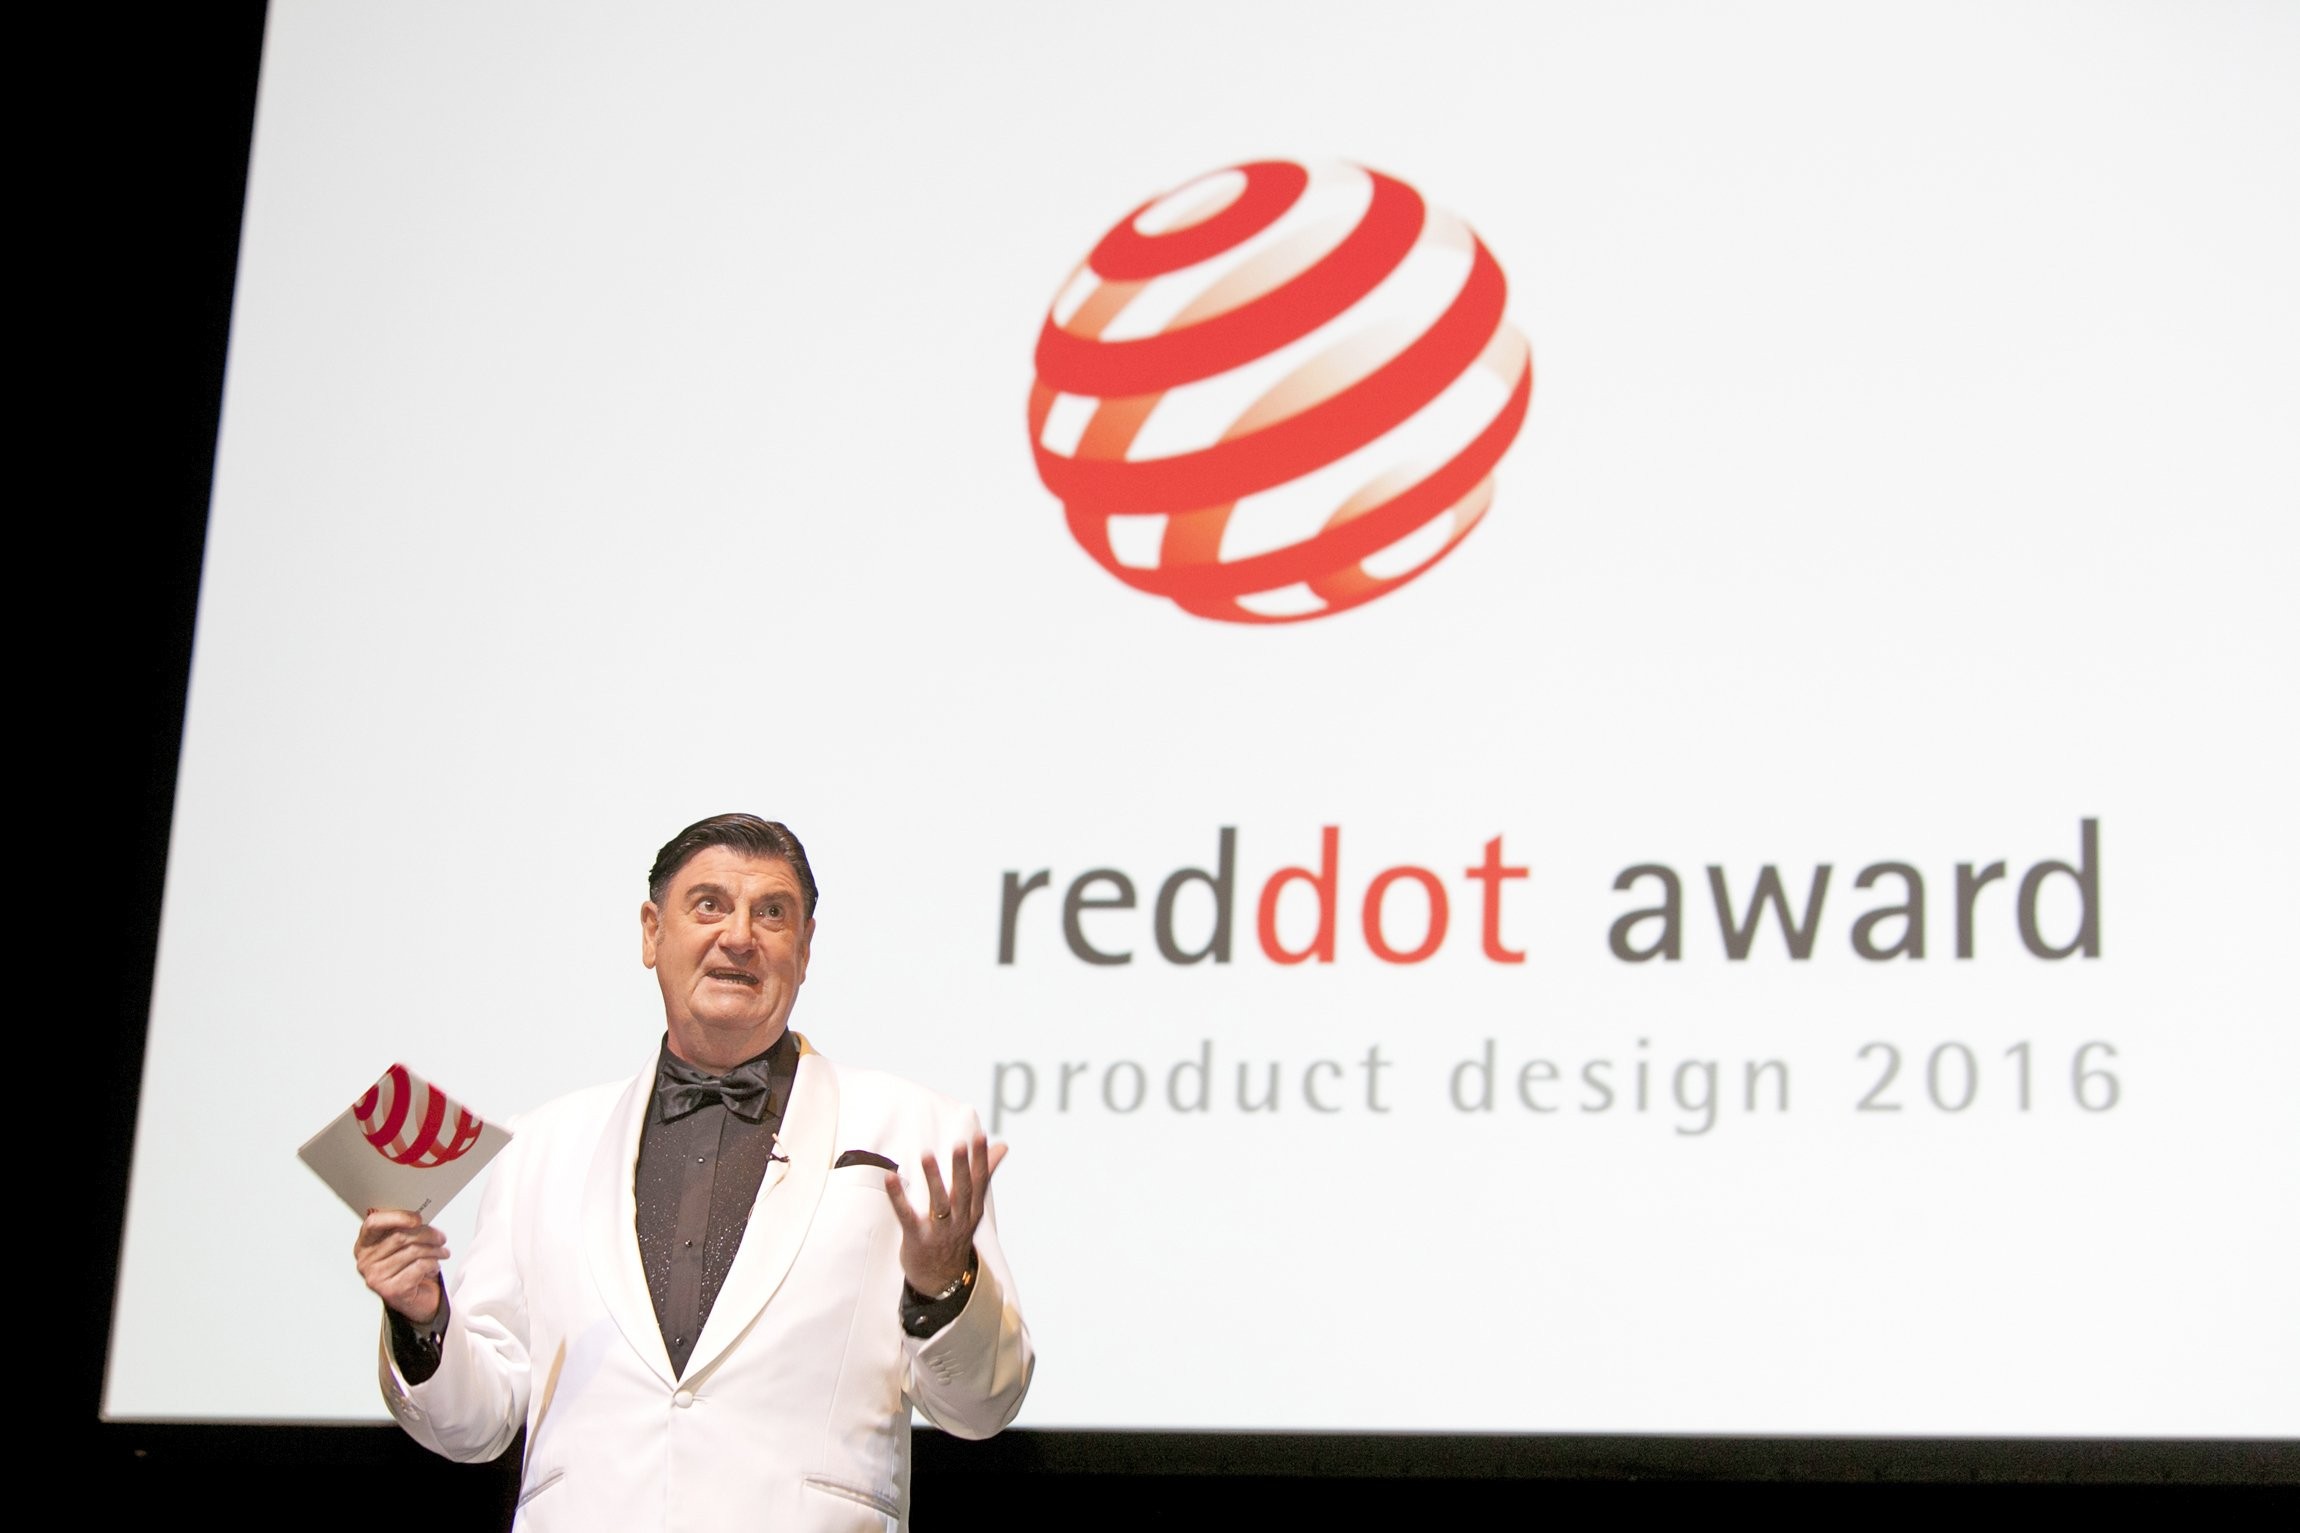 Sự kiện: Giải thưởng thiết kế Red Dot năm 2016